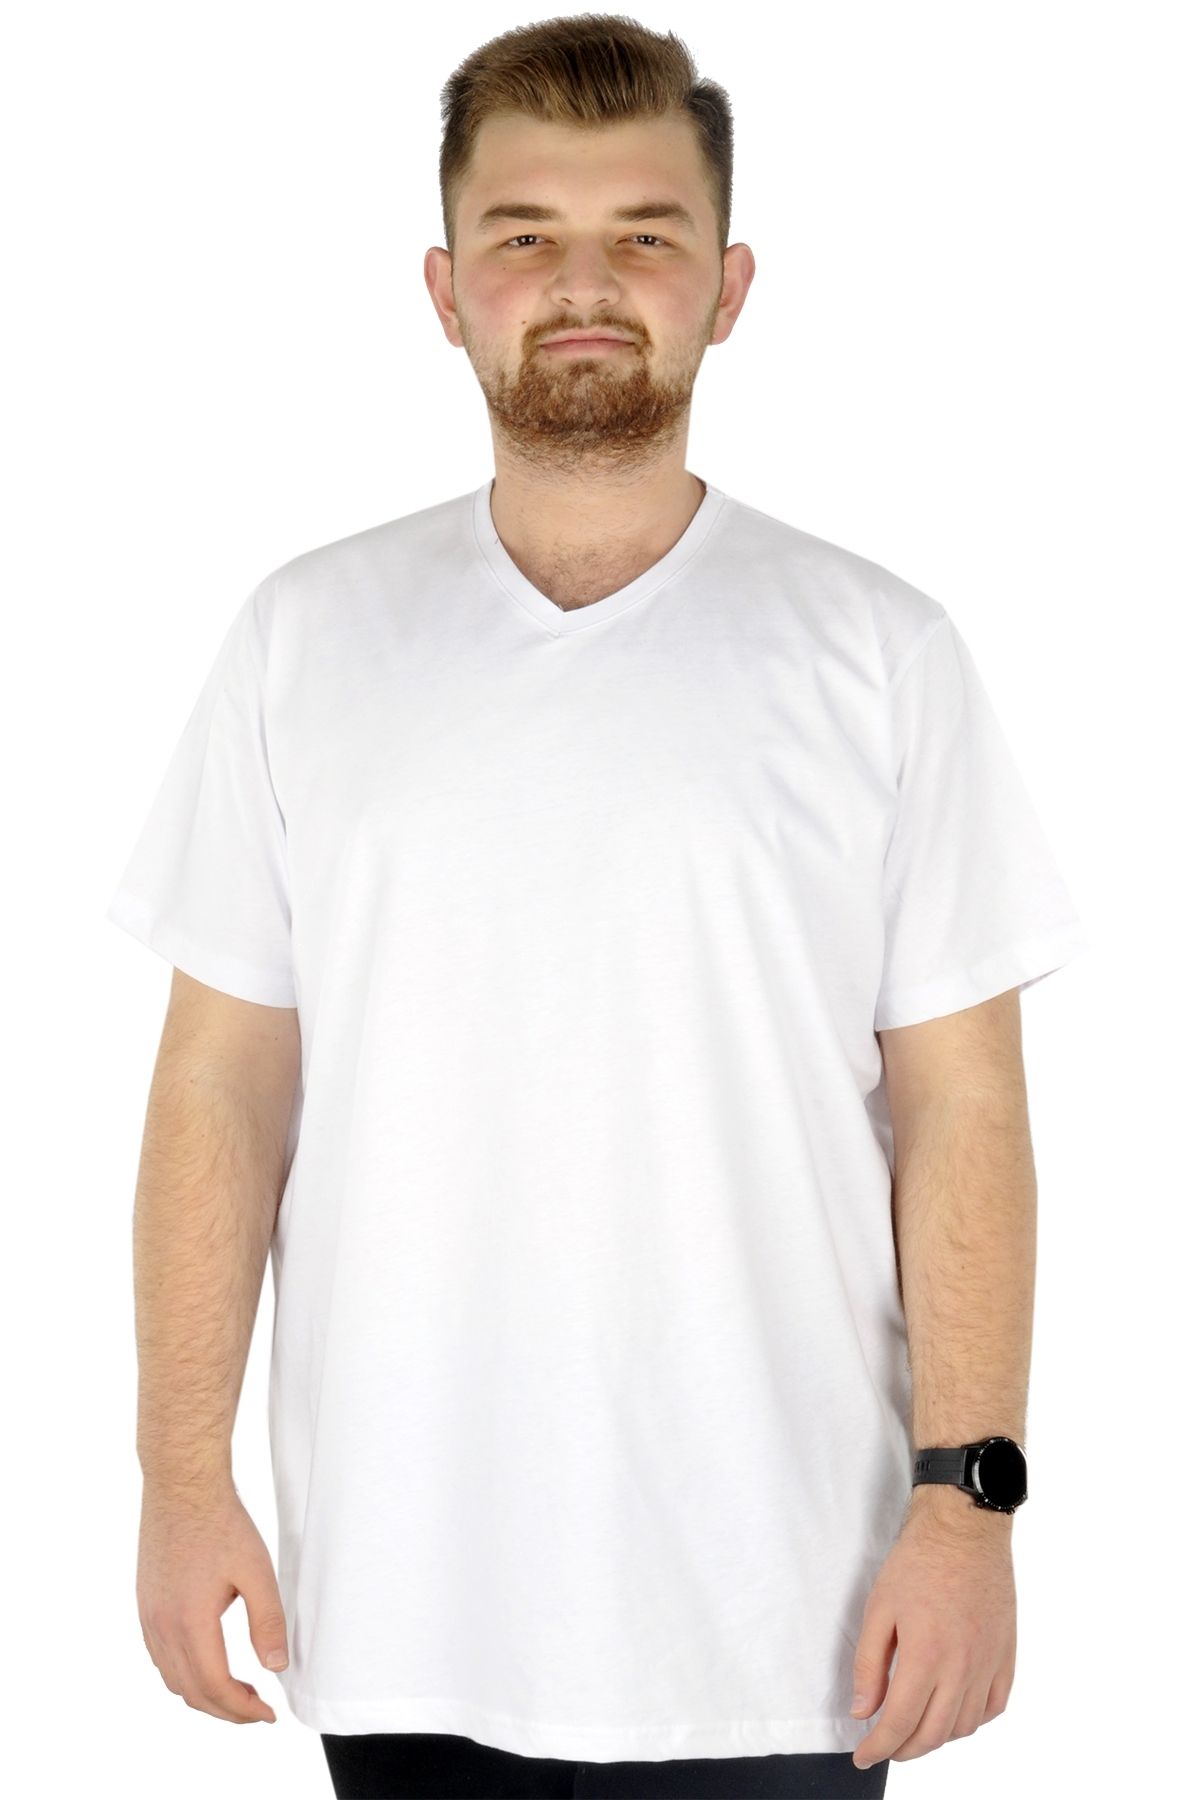 Modexl Mode Xl Büyük Beden Erkek Tshirt V Yaka Basic 20032 Beyaz